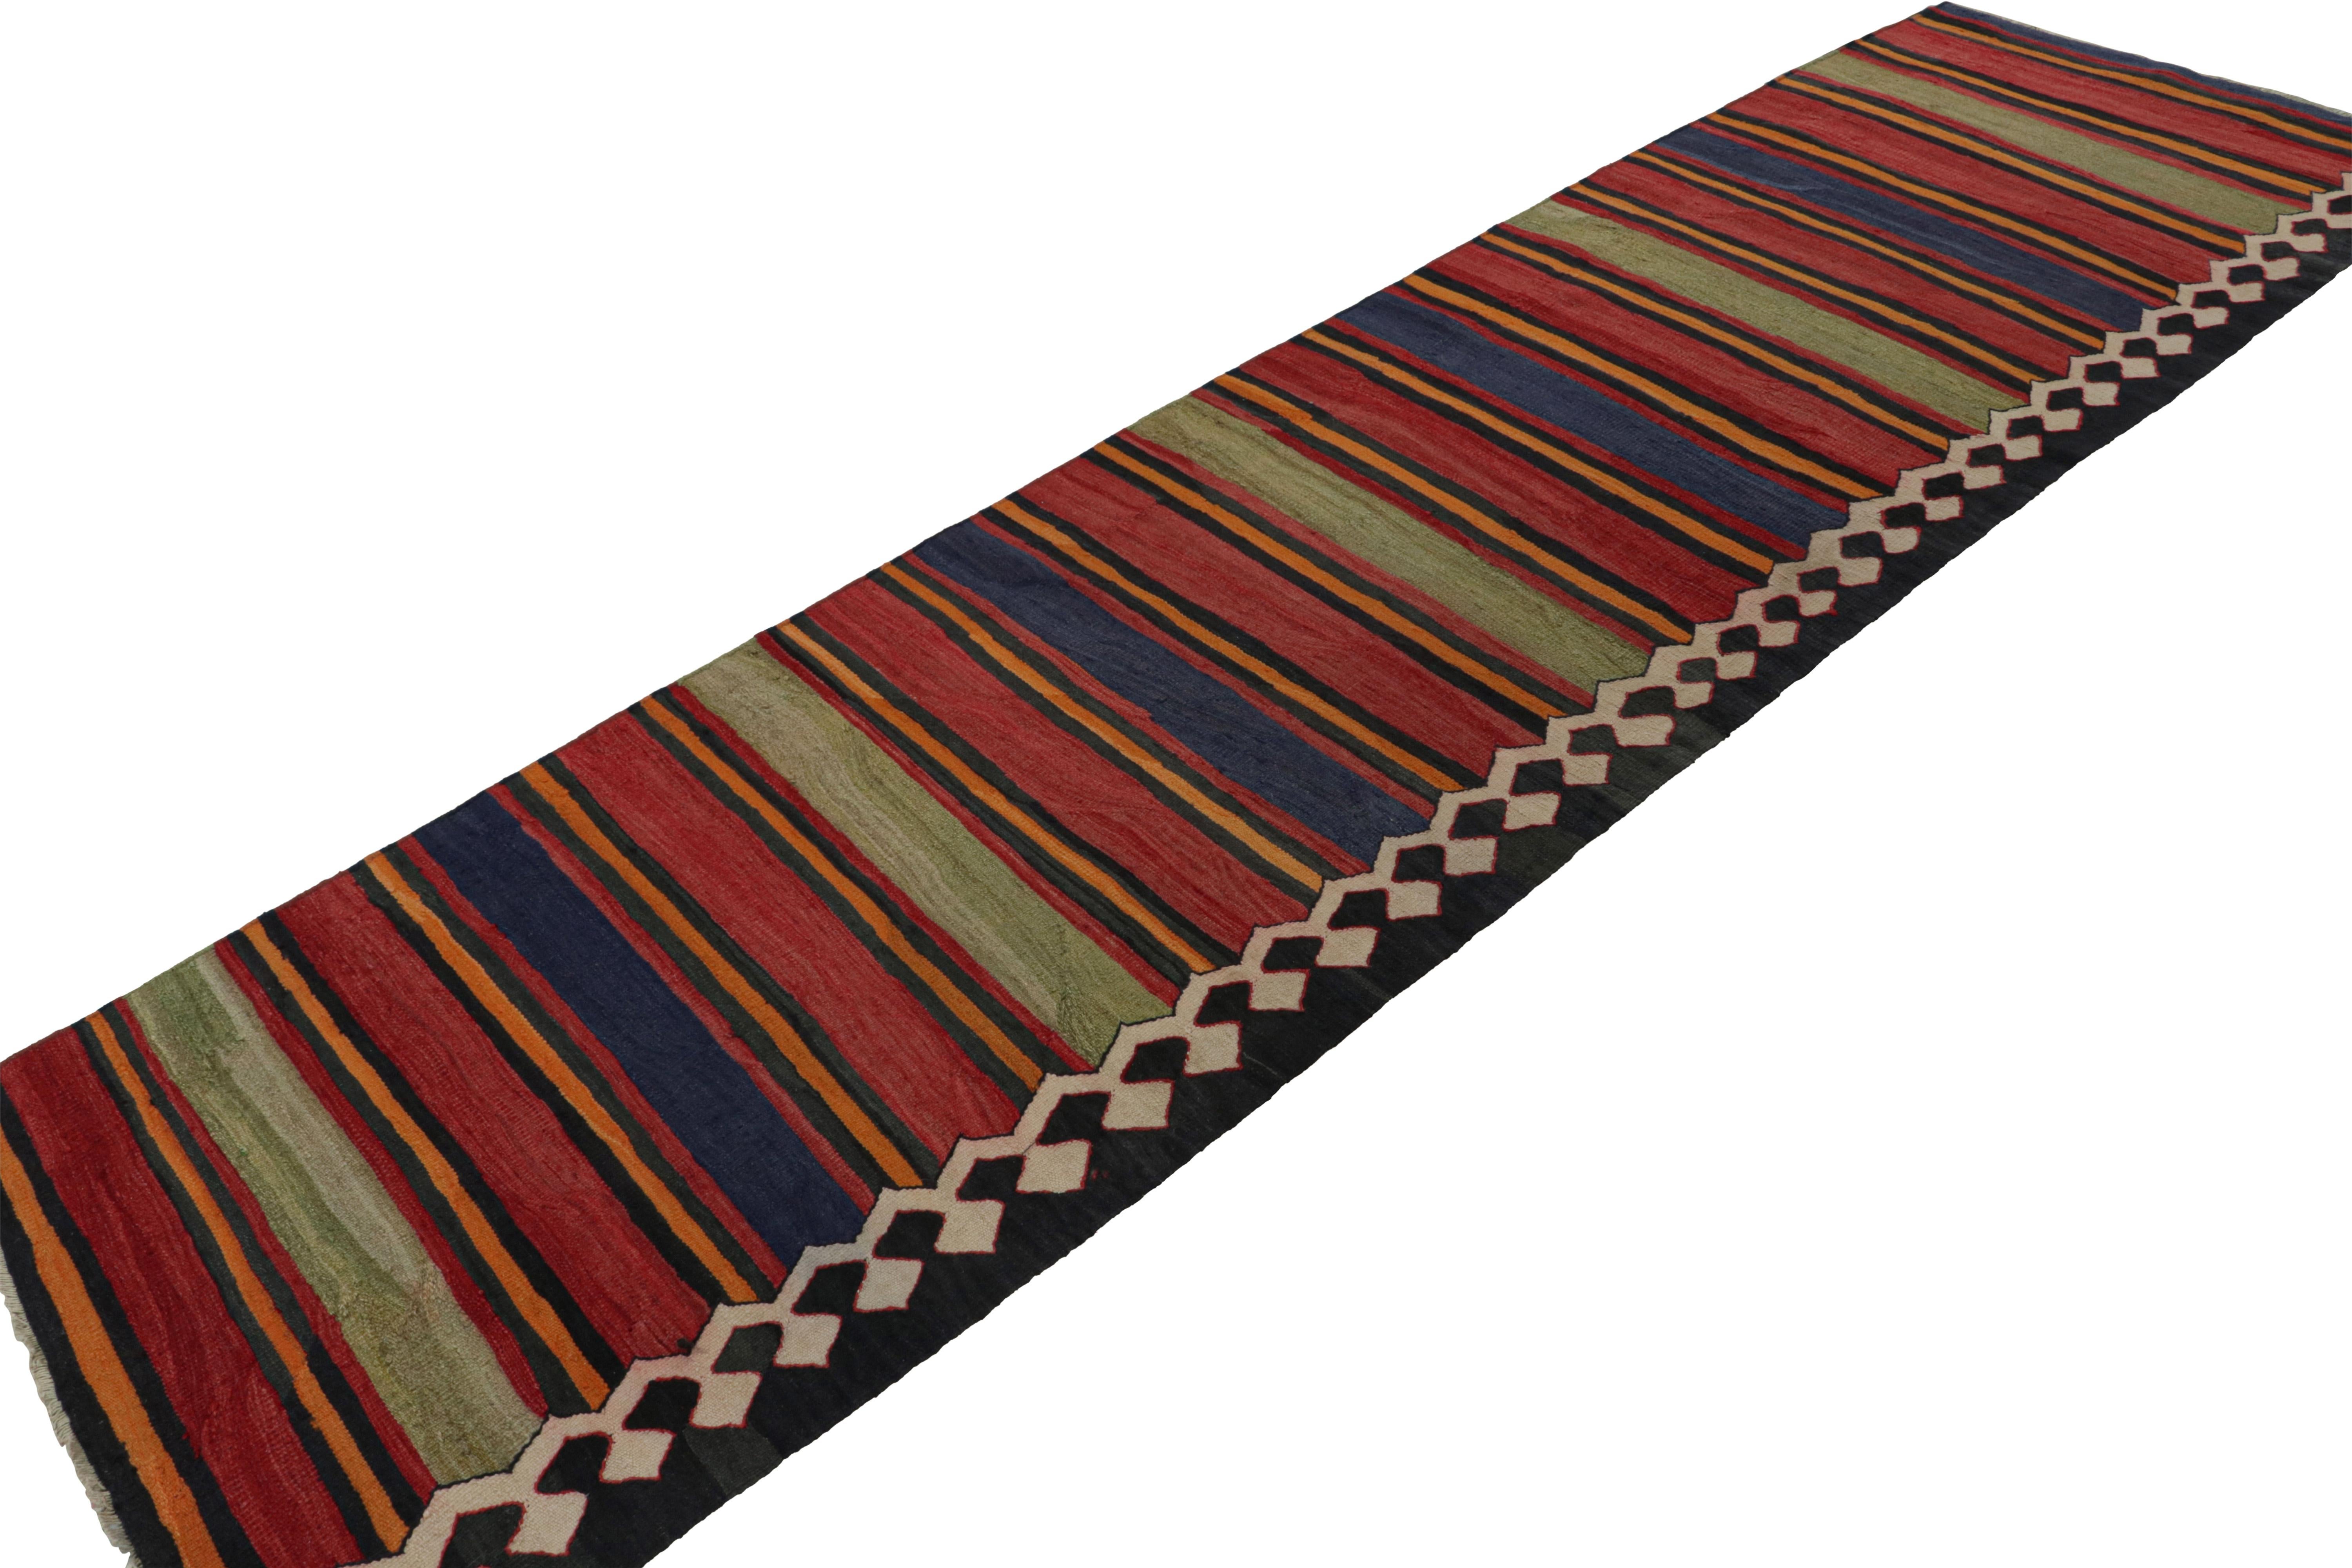 Noué à la main en laine, ce 3x12 vintage...  Ce tapis de course en kilim tribal afghan, datant d'environ 1950-1960, est un nouvel ajout à la collection Rug & Kilim.  

Sur le Design : 

Originaire d'Afghanistan, ce tapis de course est une pièce